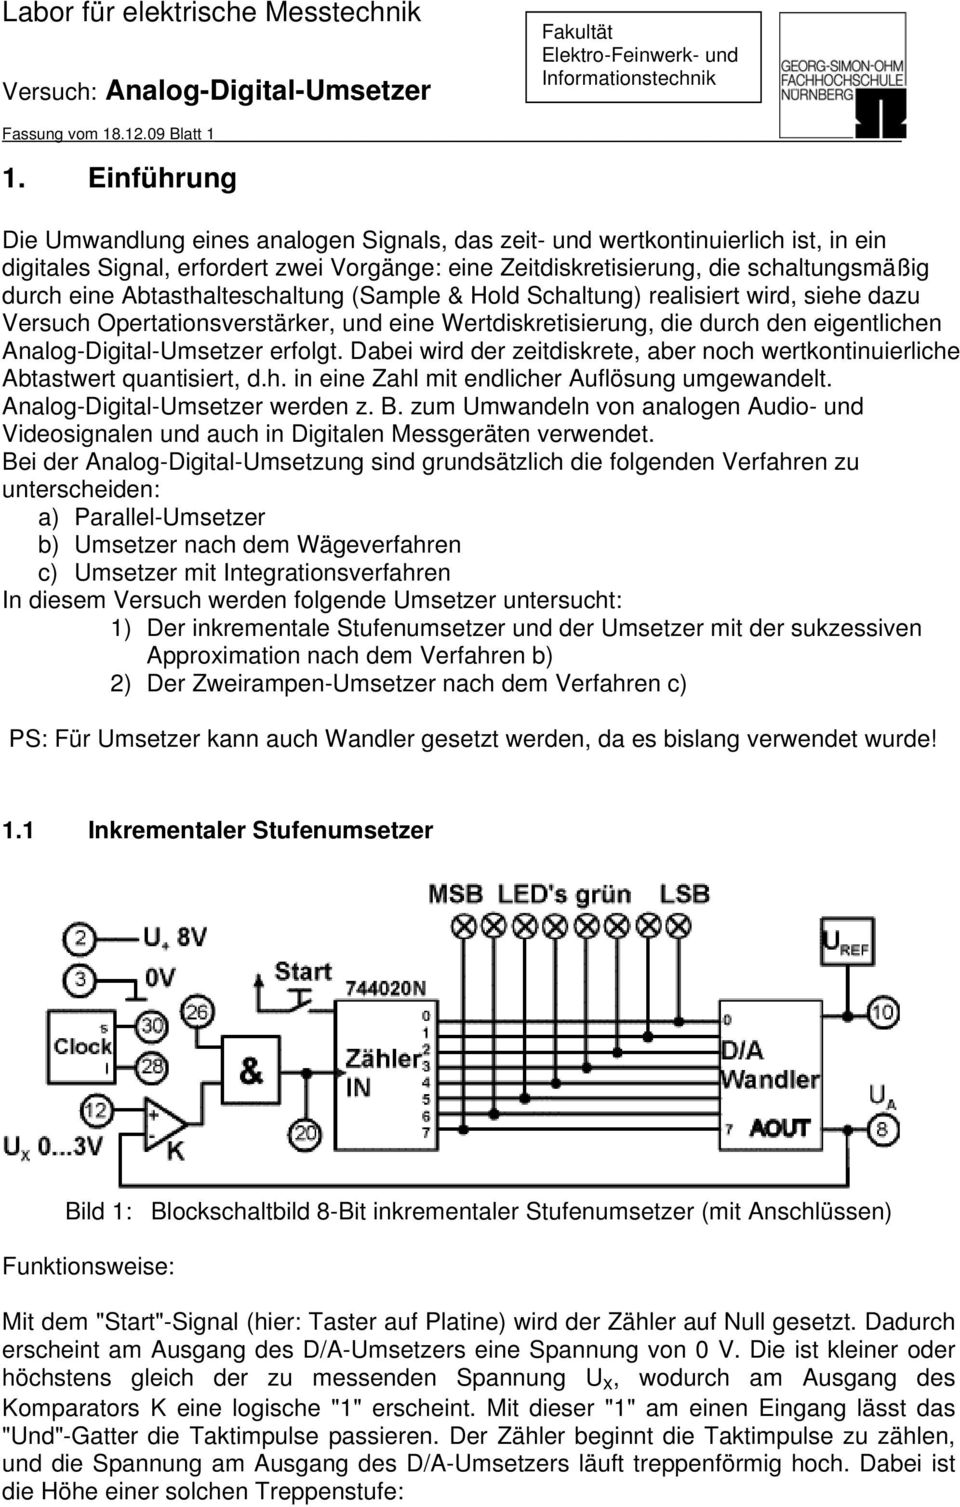 Labor für elektrische Messtechnik - PDF Free Download